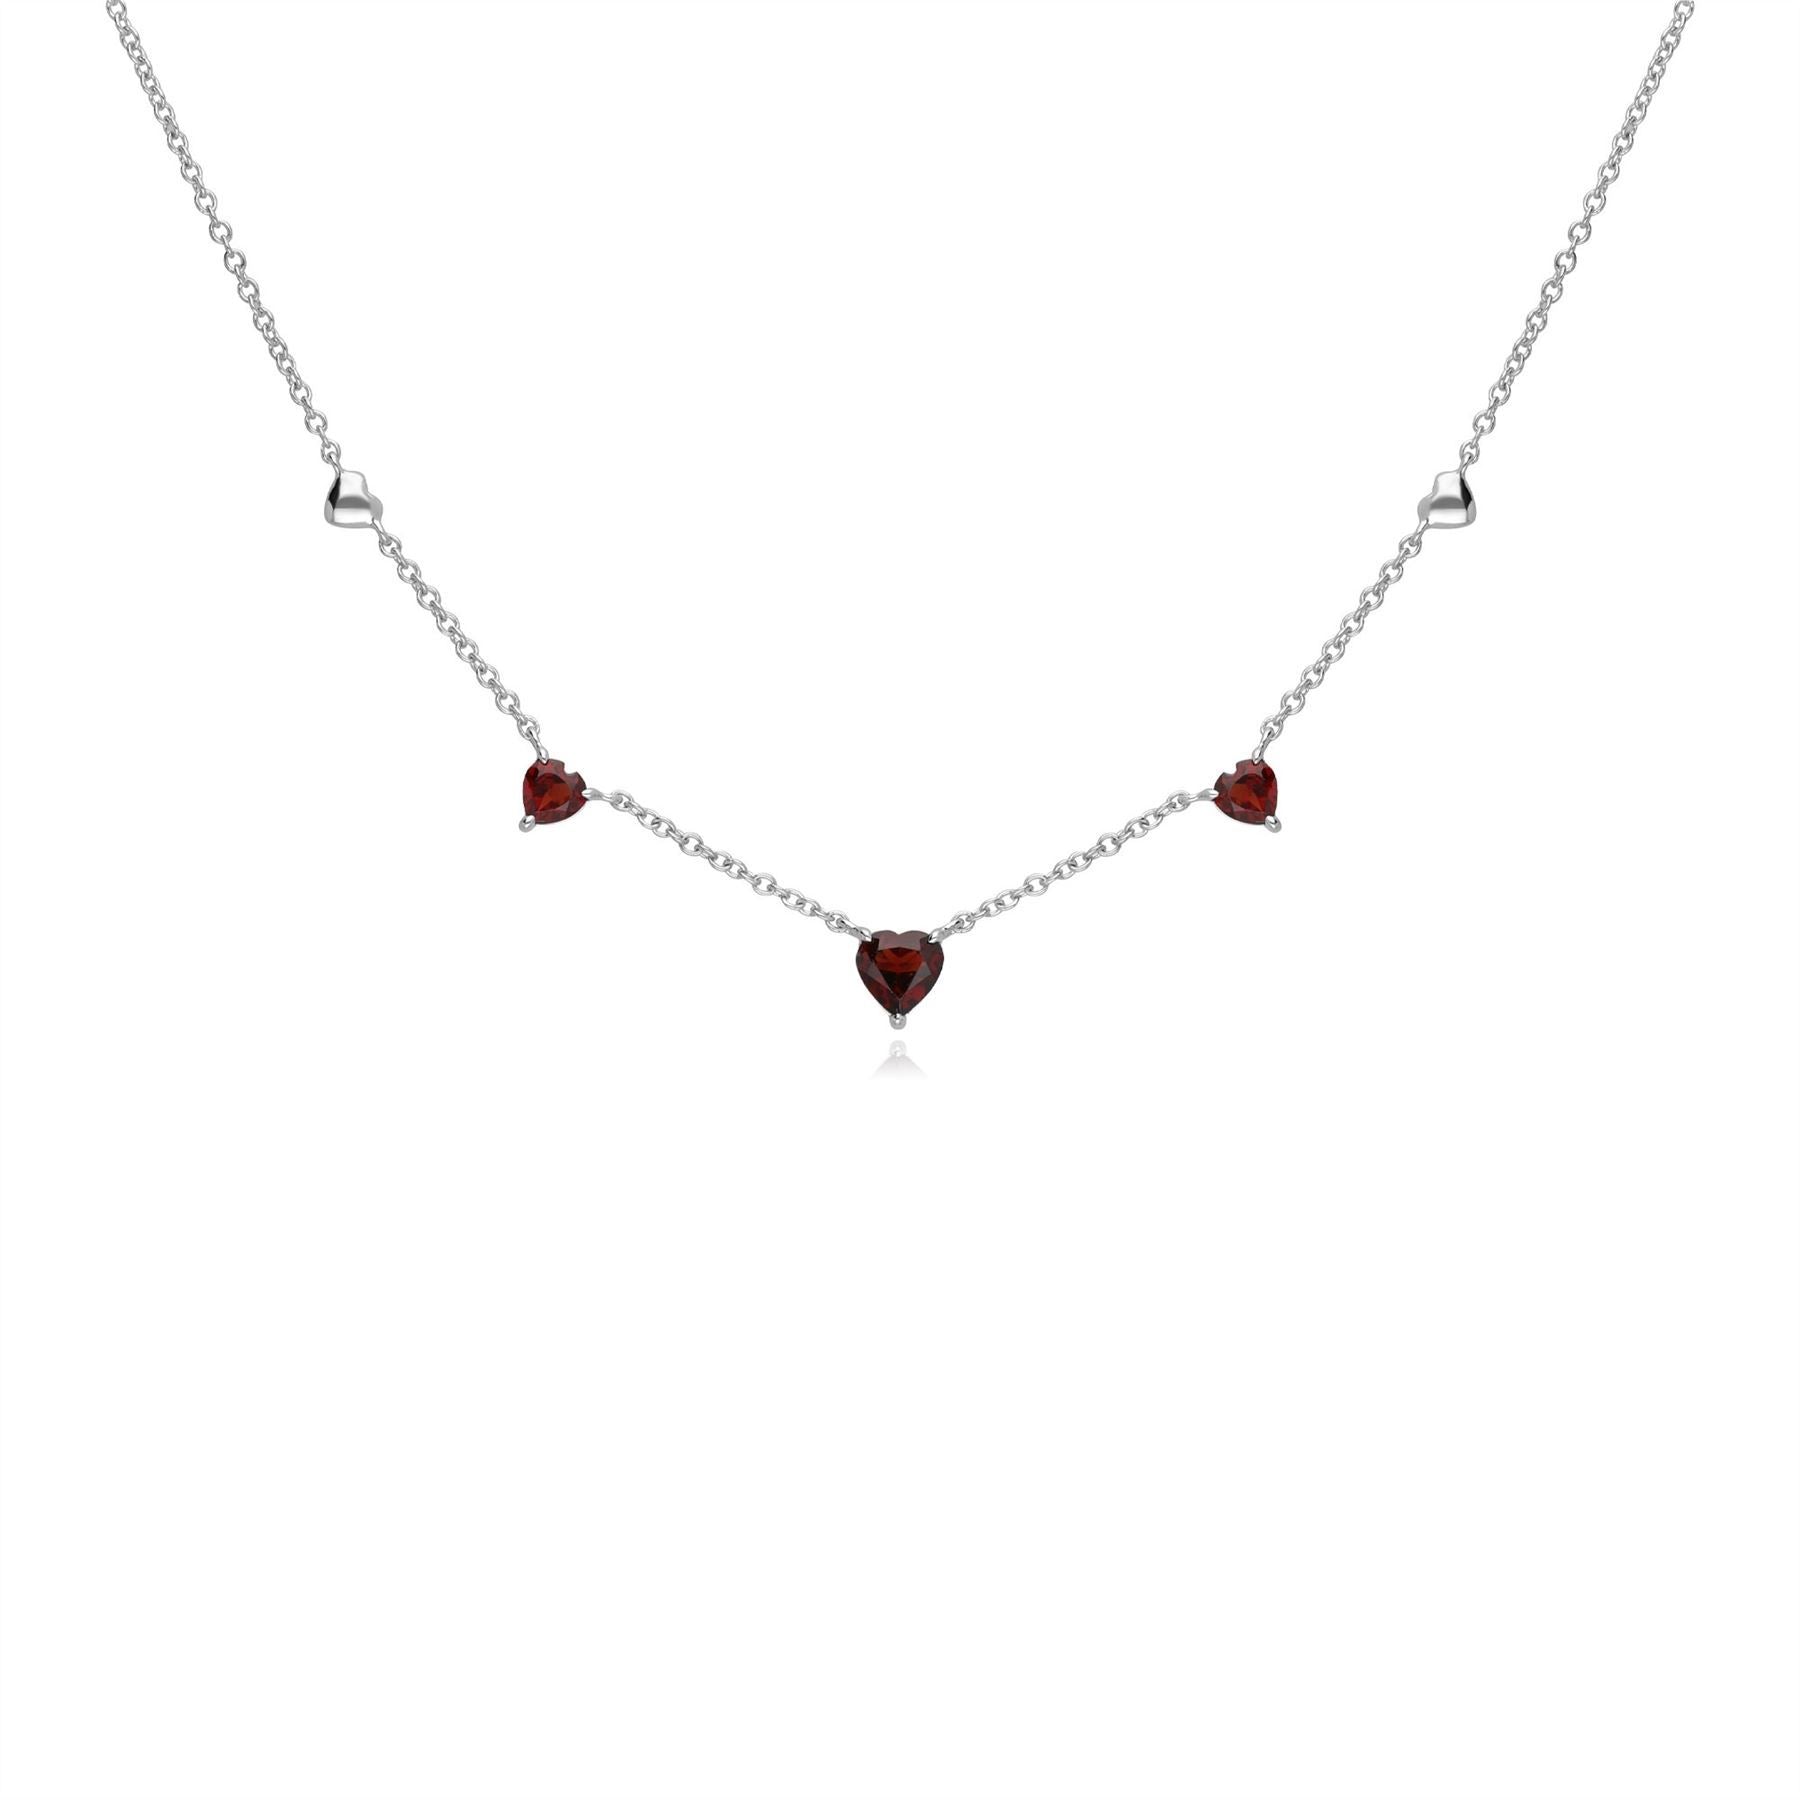 Gemondo Red Garnet Gemstone Love Heart Necklace in 9ct White Gold